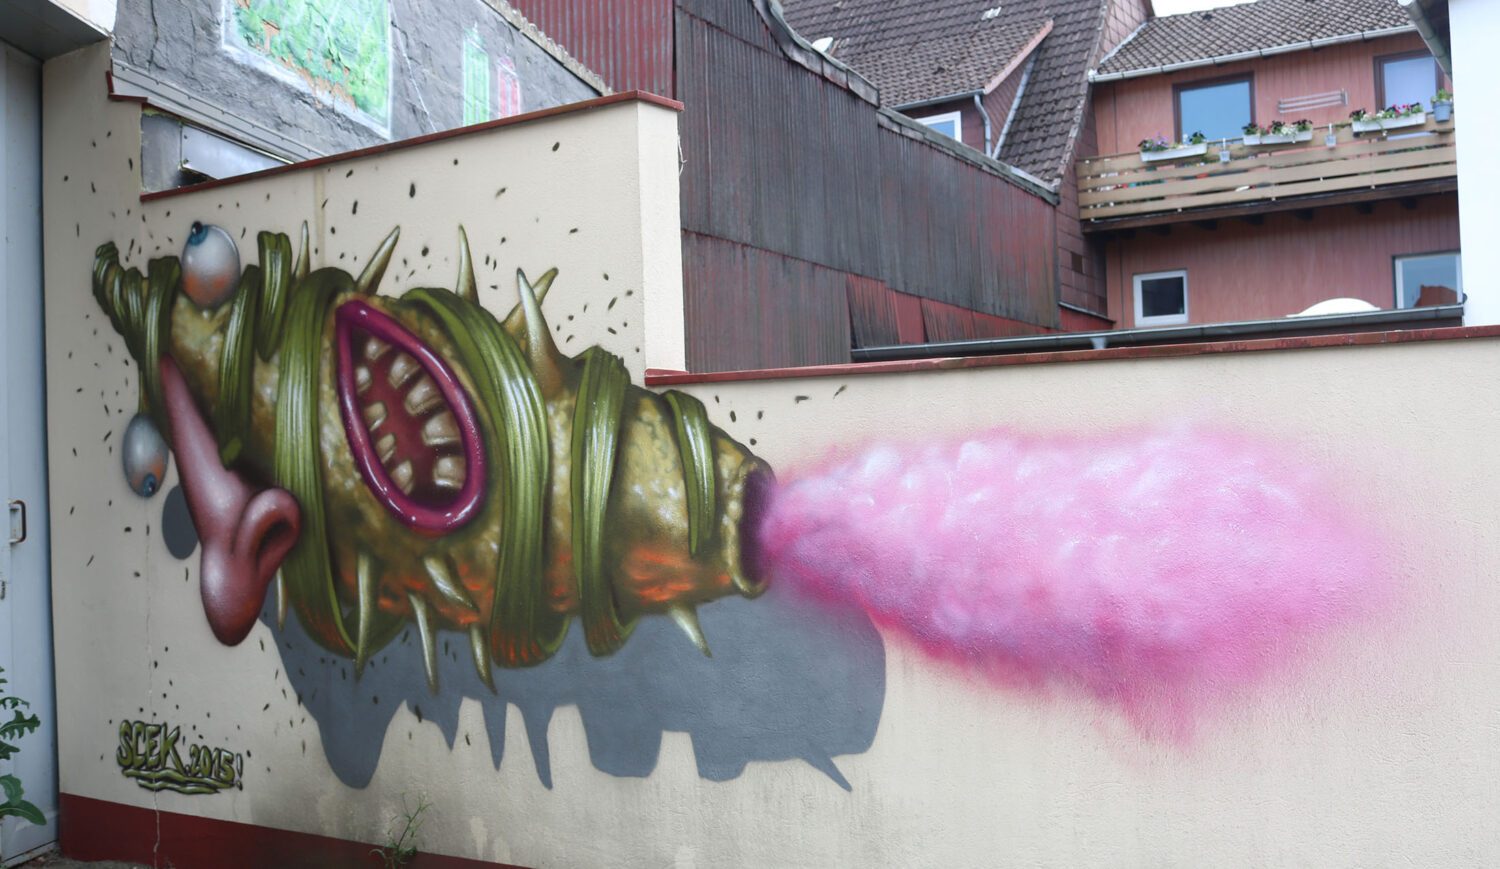 Wer steckt hinter Street Artist*in Skec? Er, sie, es lebt in Hamburg – und knallt furchterregend amüsante Phantasiefiguren an Häuserfassaden, die man so schnell nicht wieder vergisst. Diese hier verblüfft seit 2015 in Einbeck